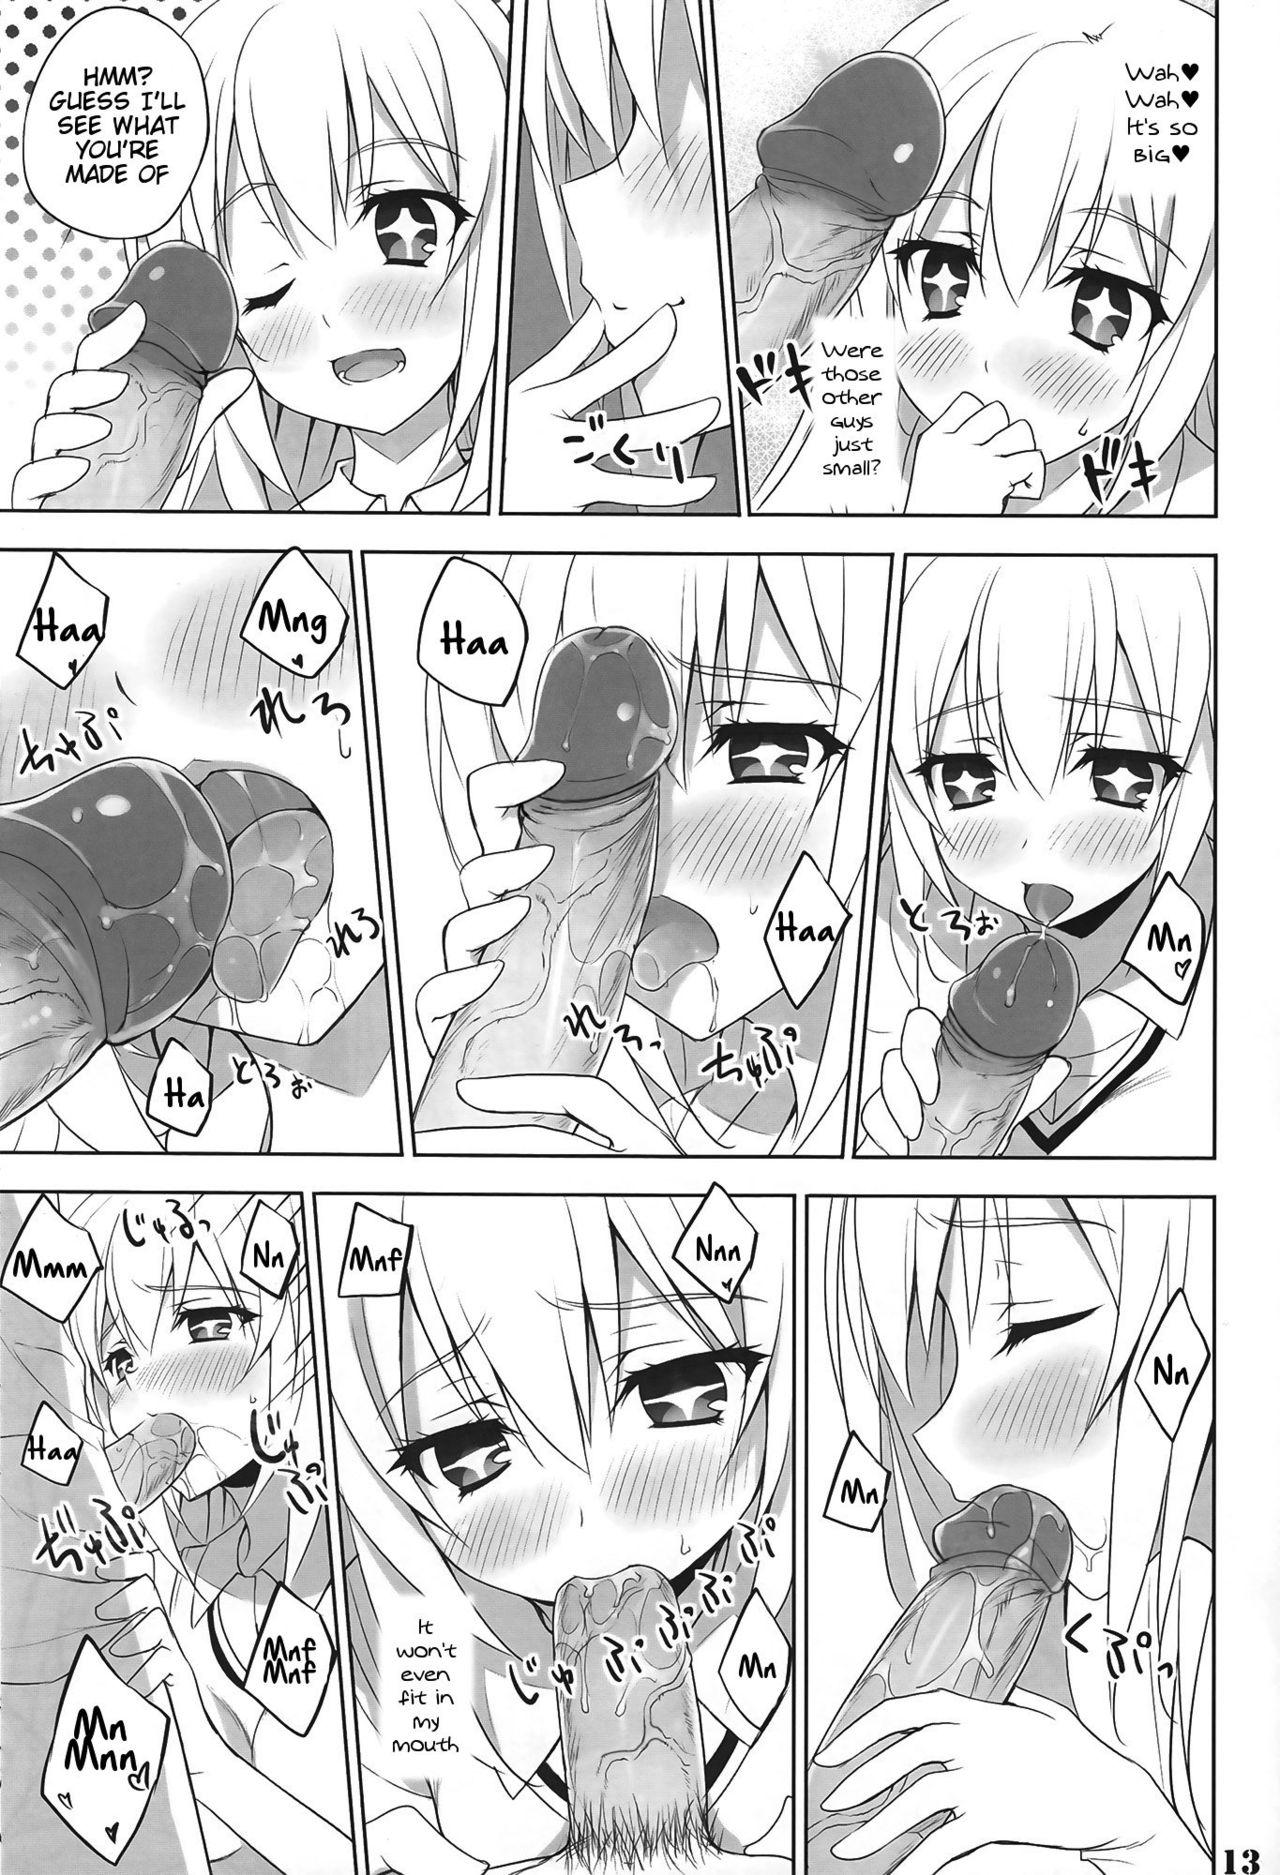 Comendo Toaru Shokuhou no Frustration - Toaru kagaku no railgun Body - Page 12